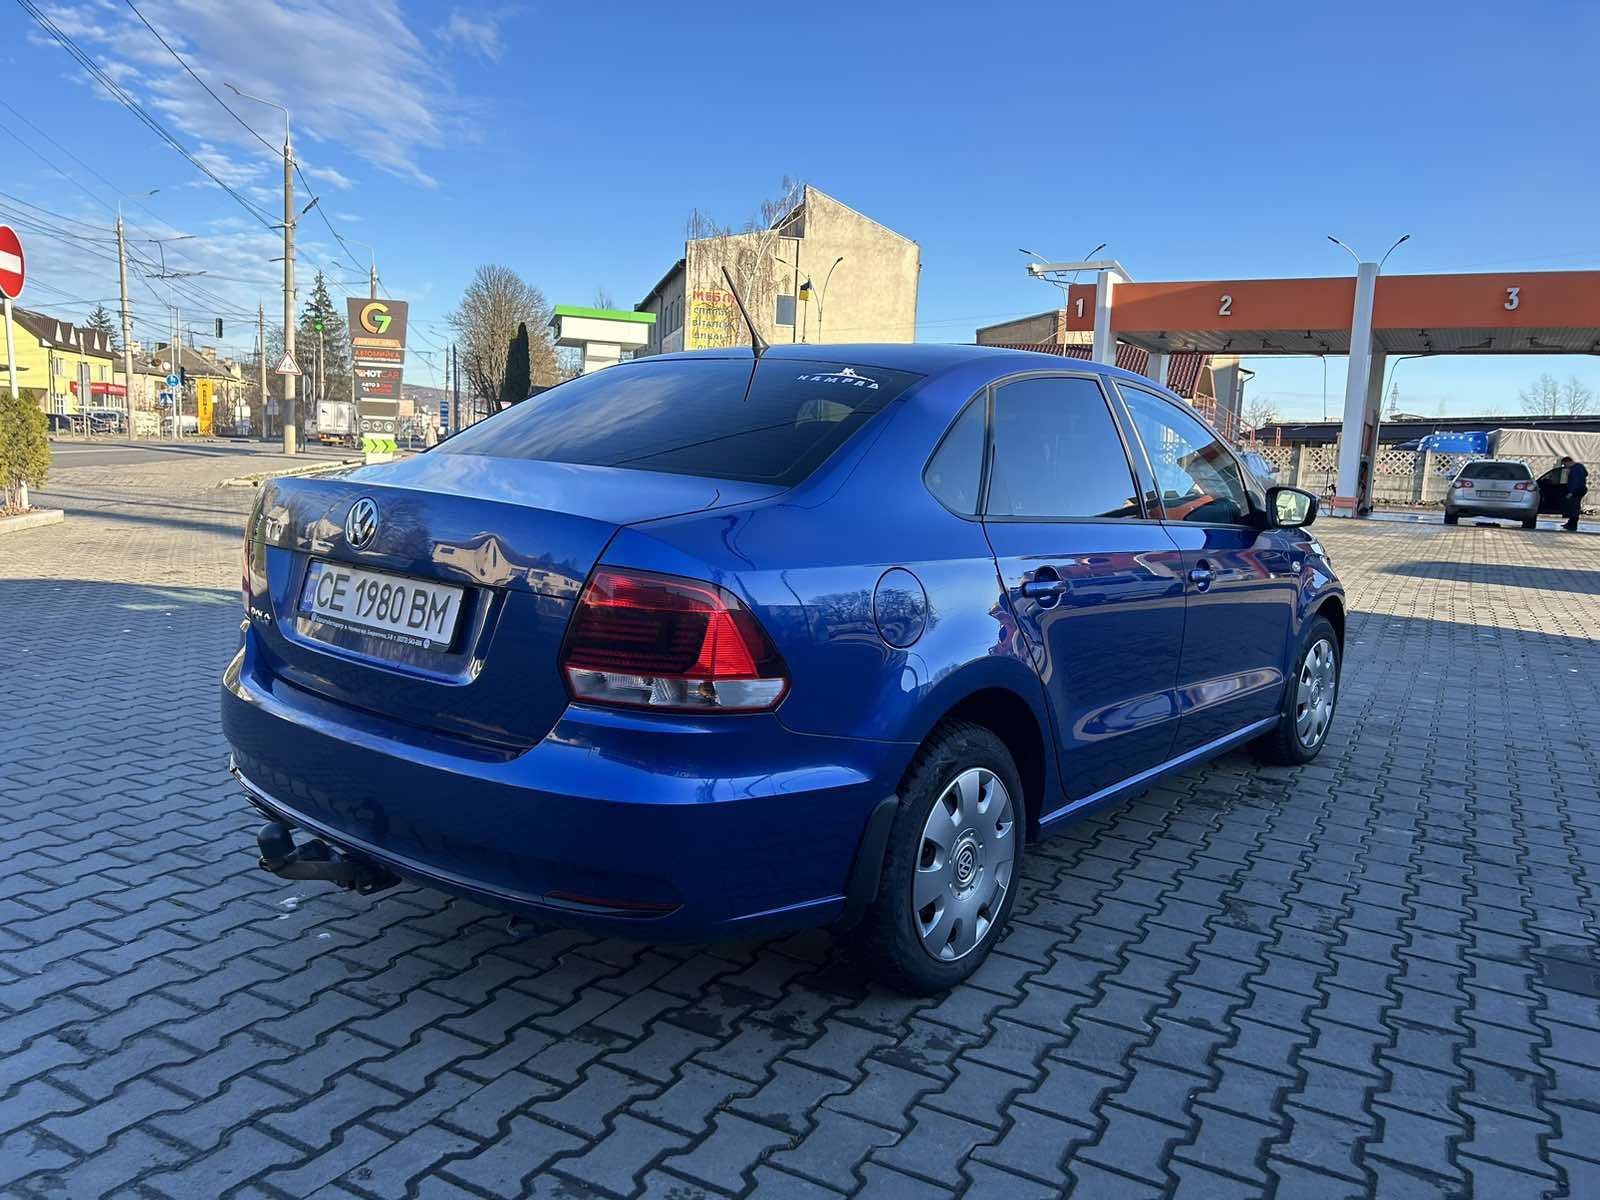 Volkswagen Polo 2018
Газ / Бензин, 1.4 л
Синій колір
Відсутній у розшу